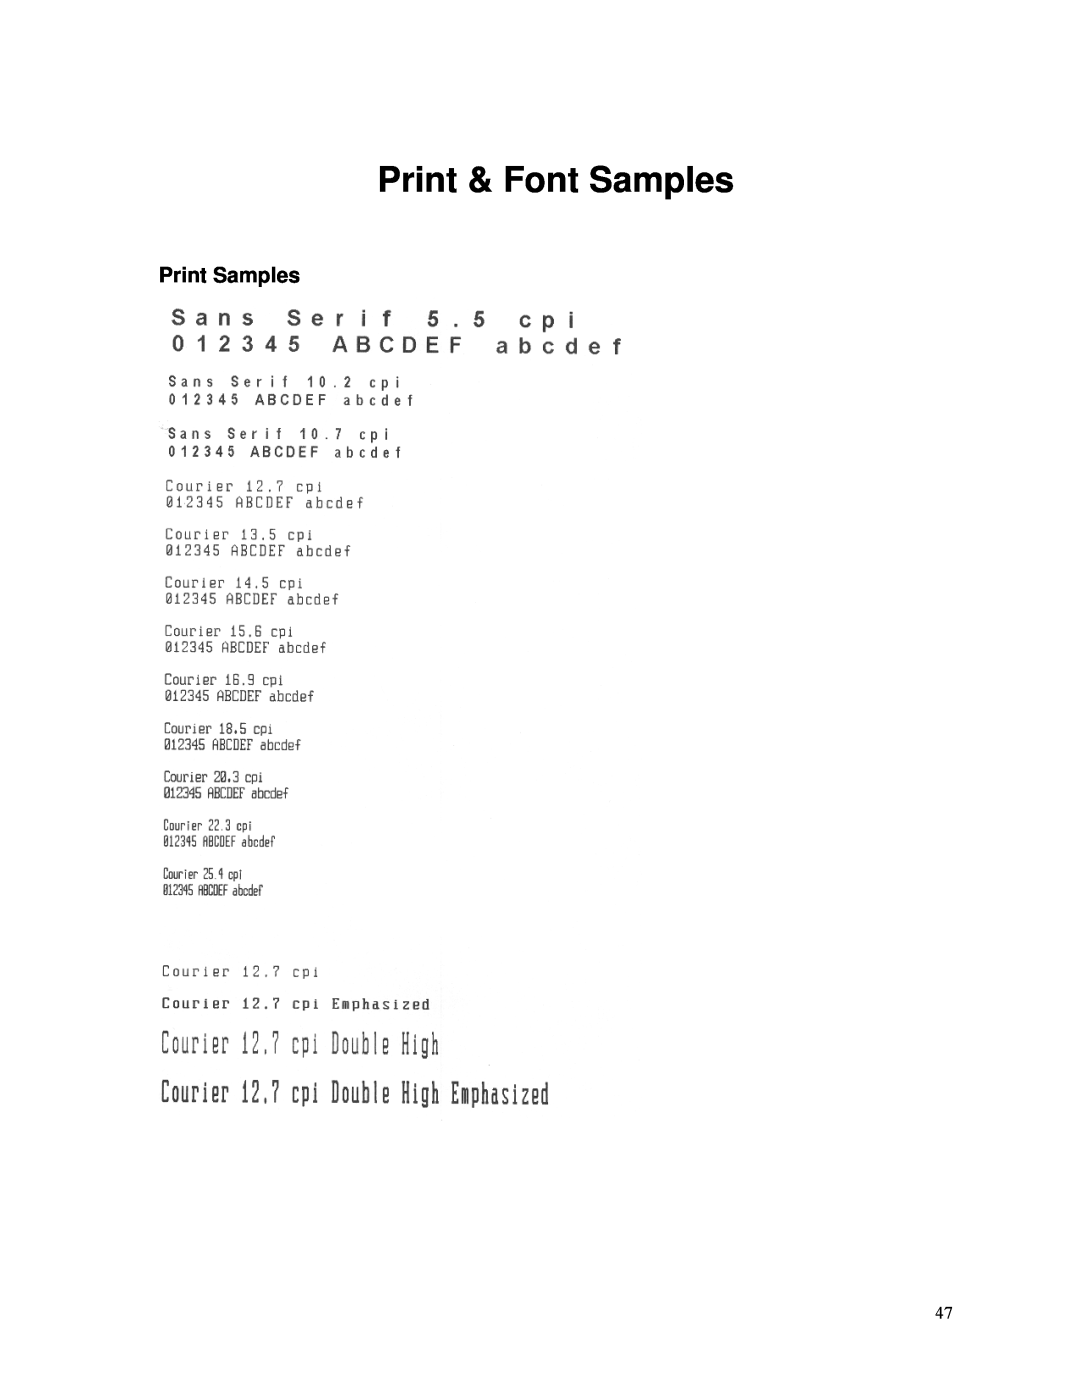 Psion Teklogix MLP 3040 Series manual Print & Font Samples, Print Samples 